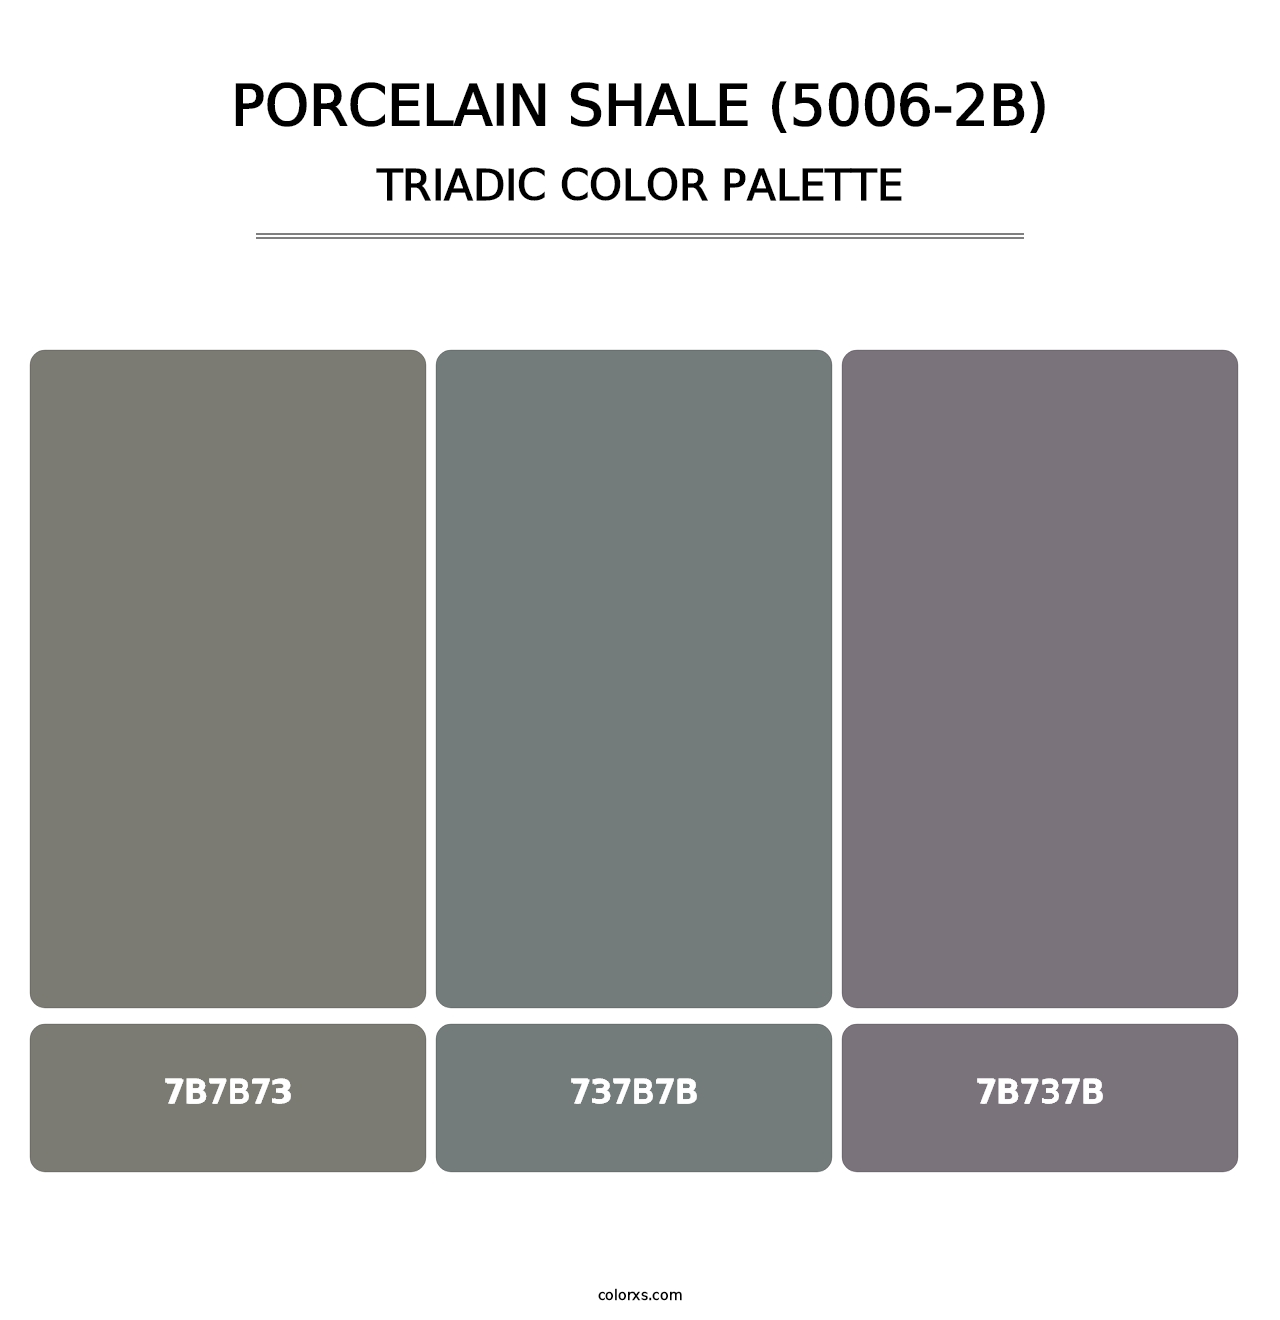 Porcelain Shale (5006-2B) - Triadic Color Palette